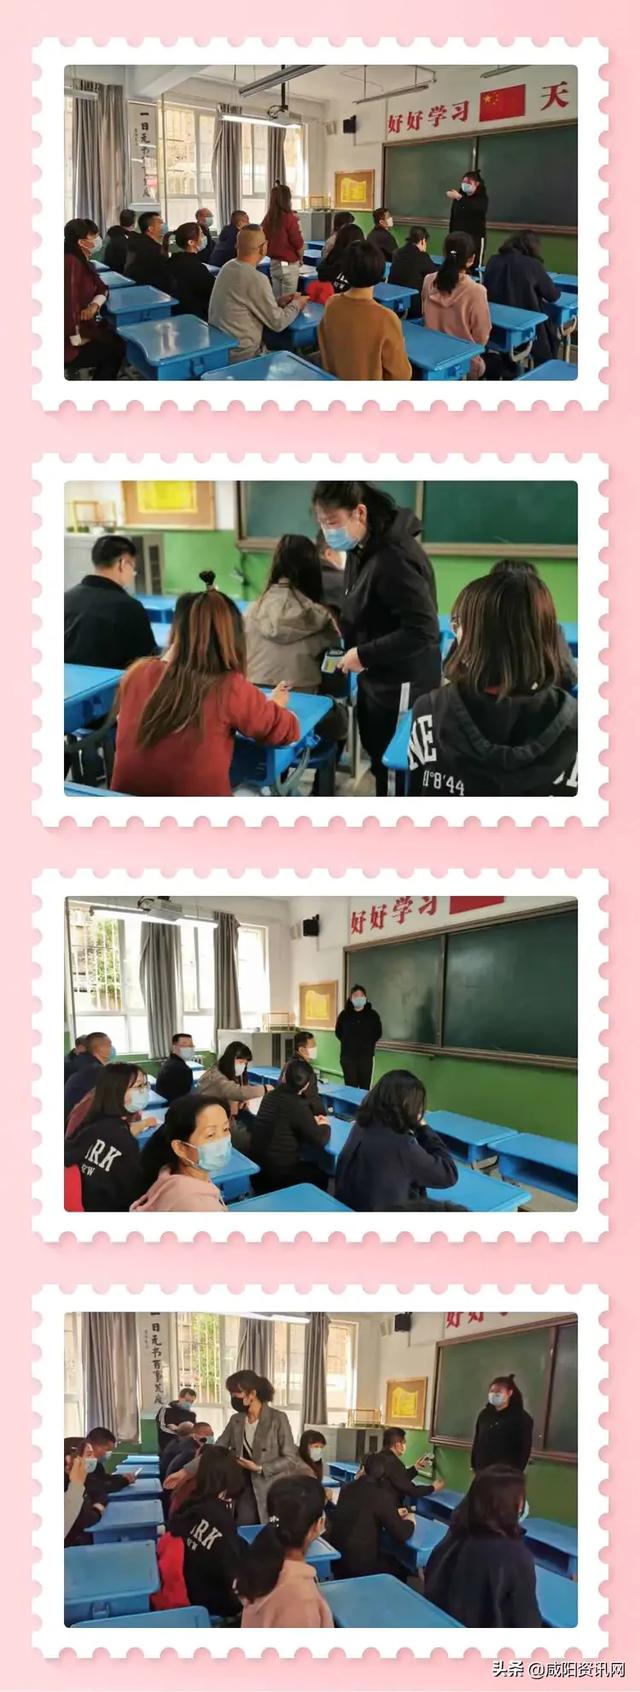 渭城区风轮小学2020春季开学疫情防控演练纪实